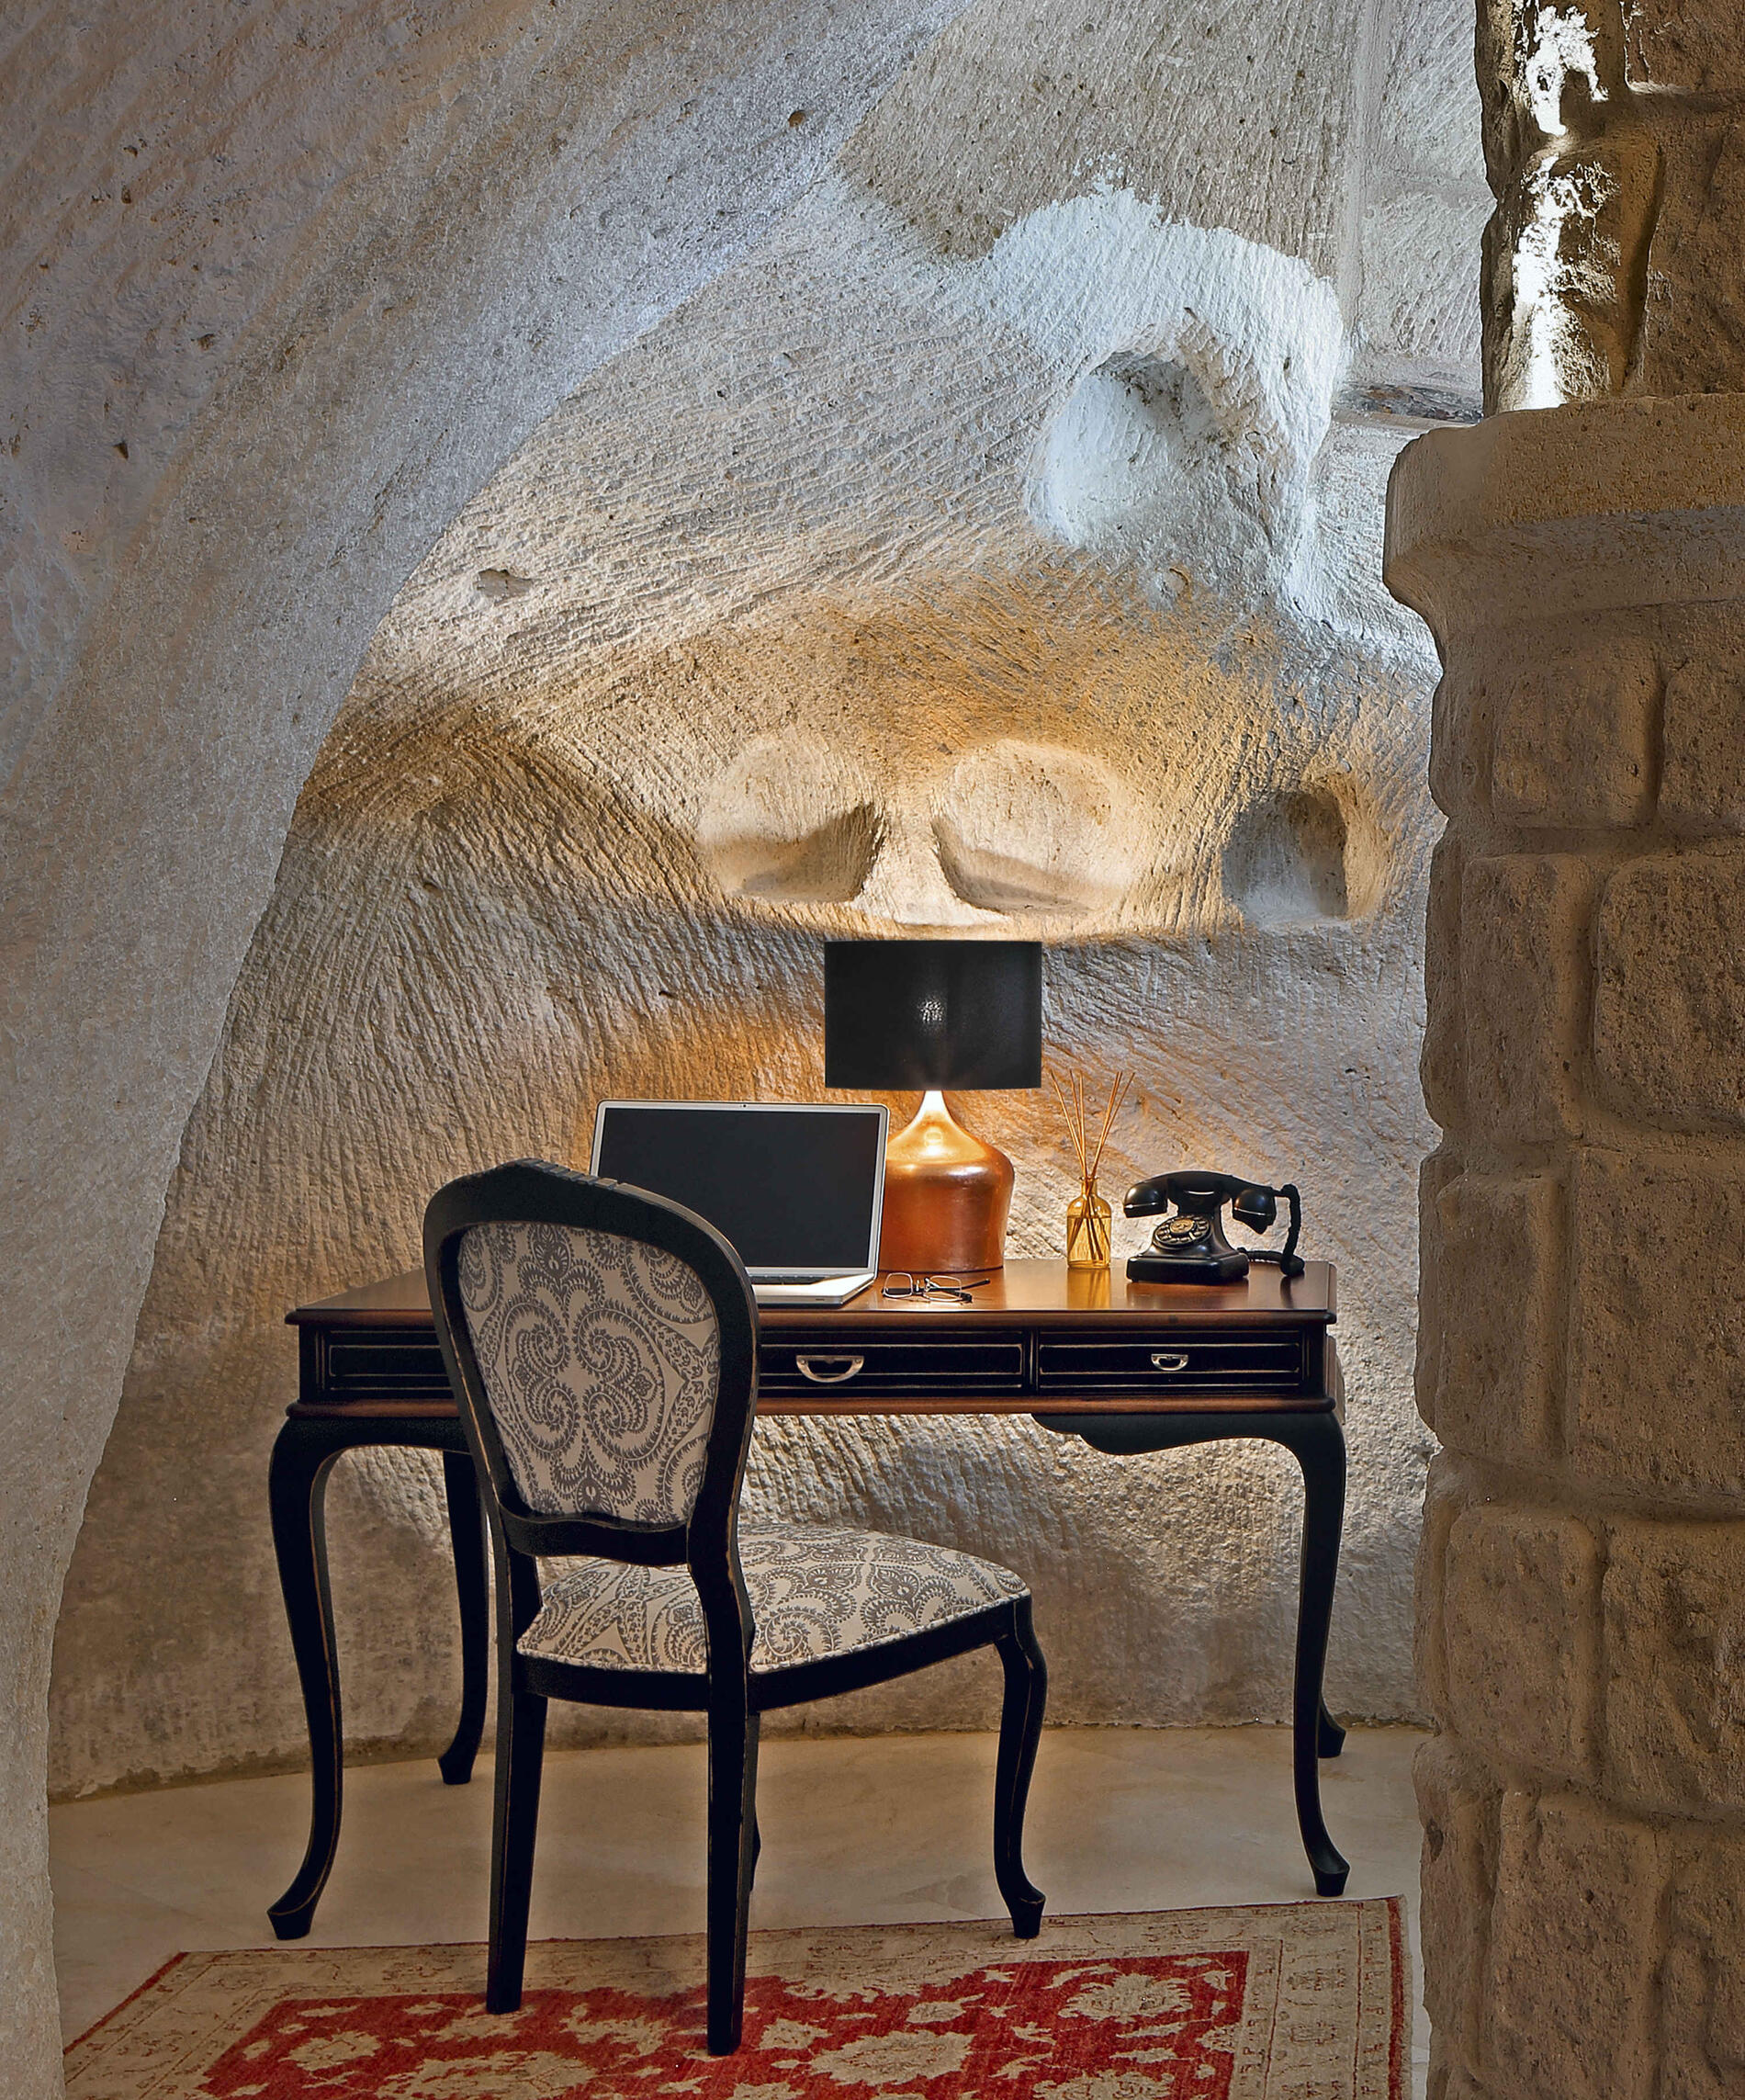 Gallery Seraphim Cave Cappadocia